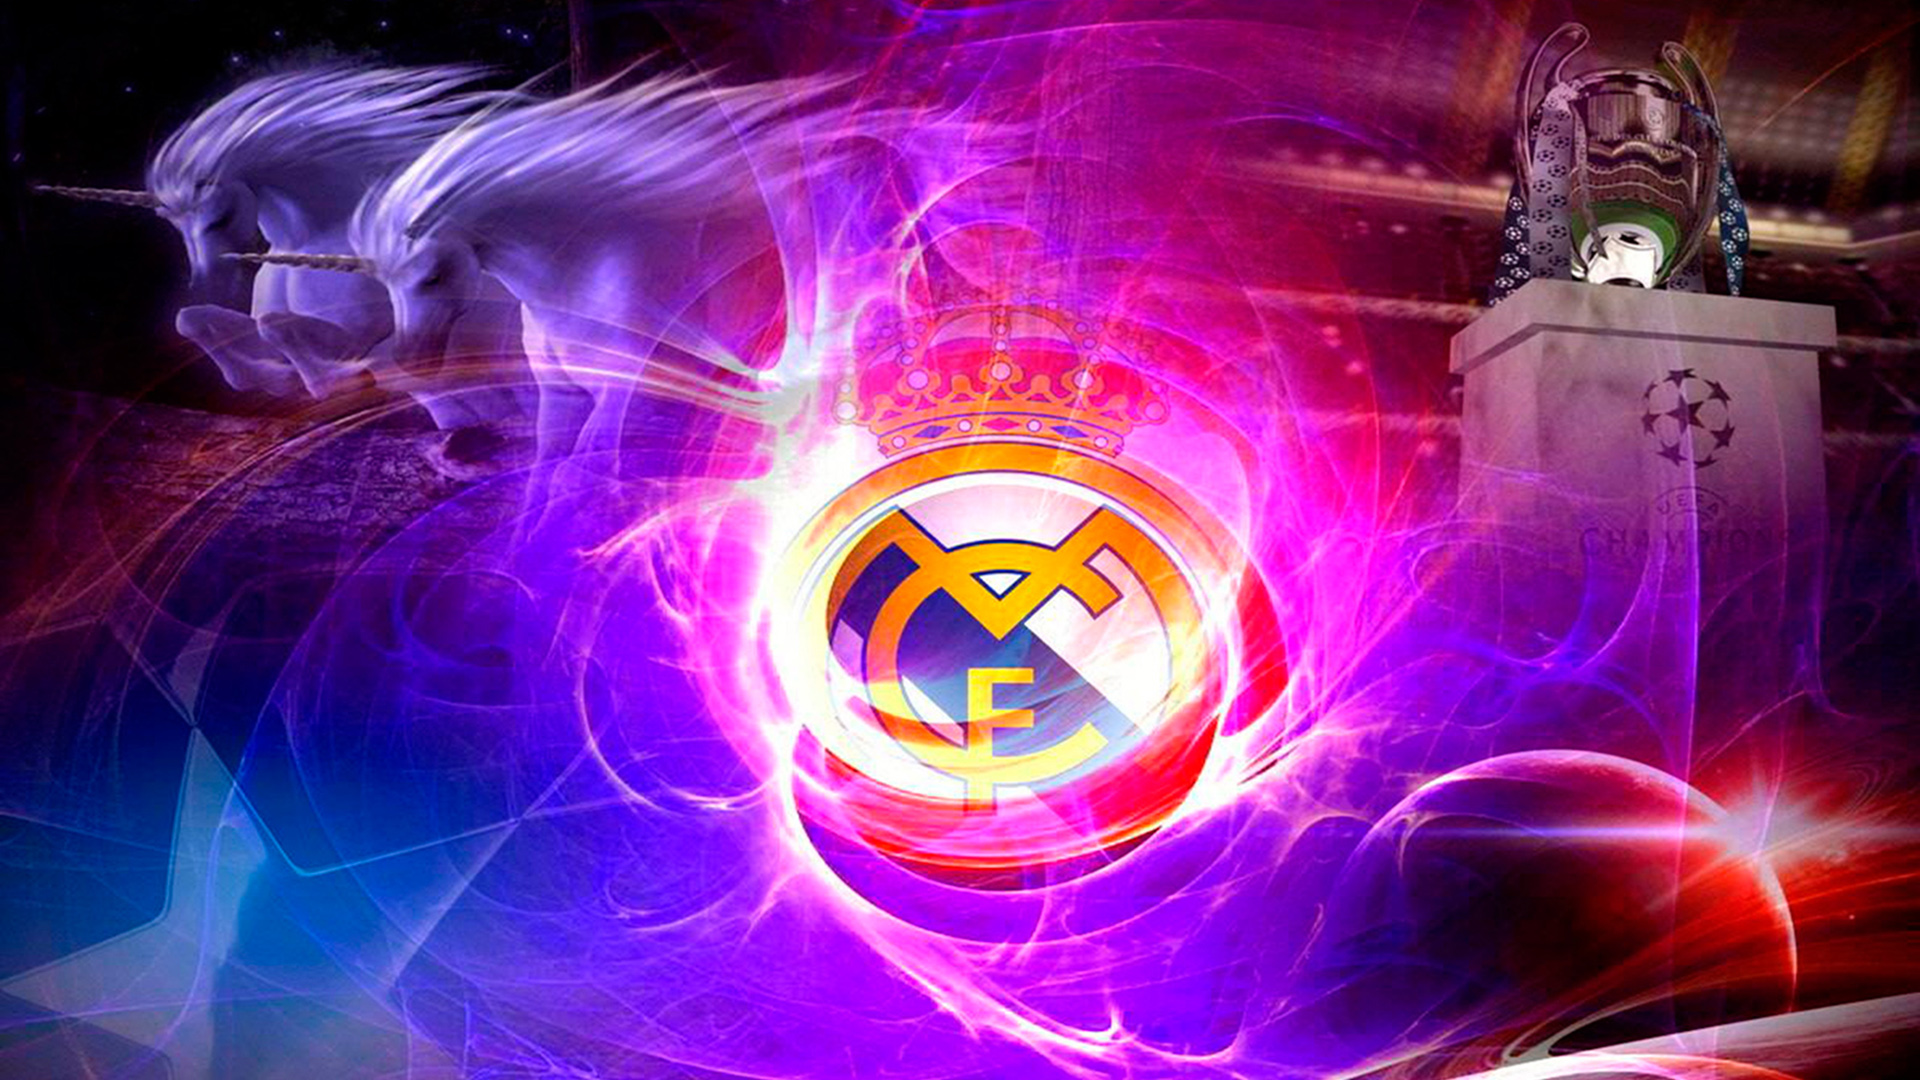 Real Madrid 2015 Wallpaper 3d - WallpaperSafari